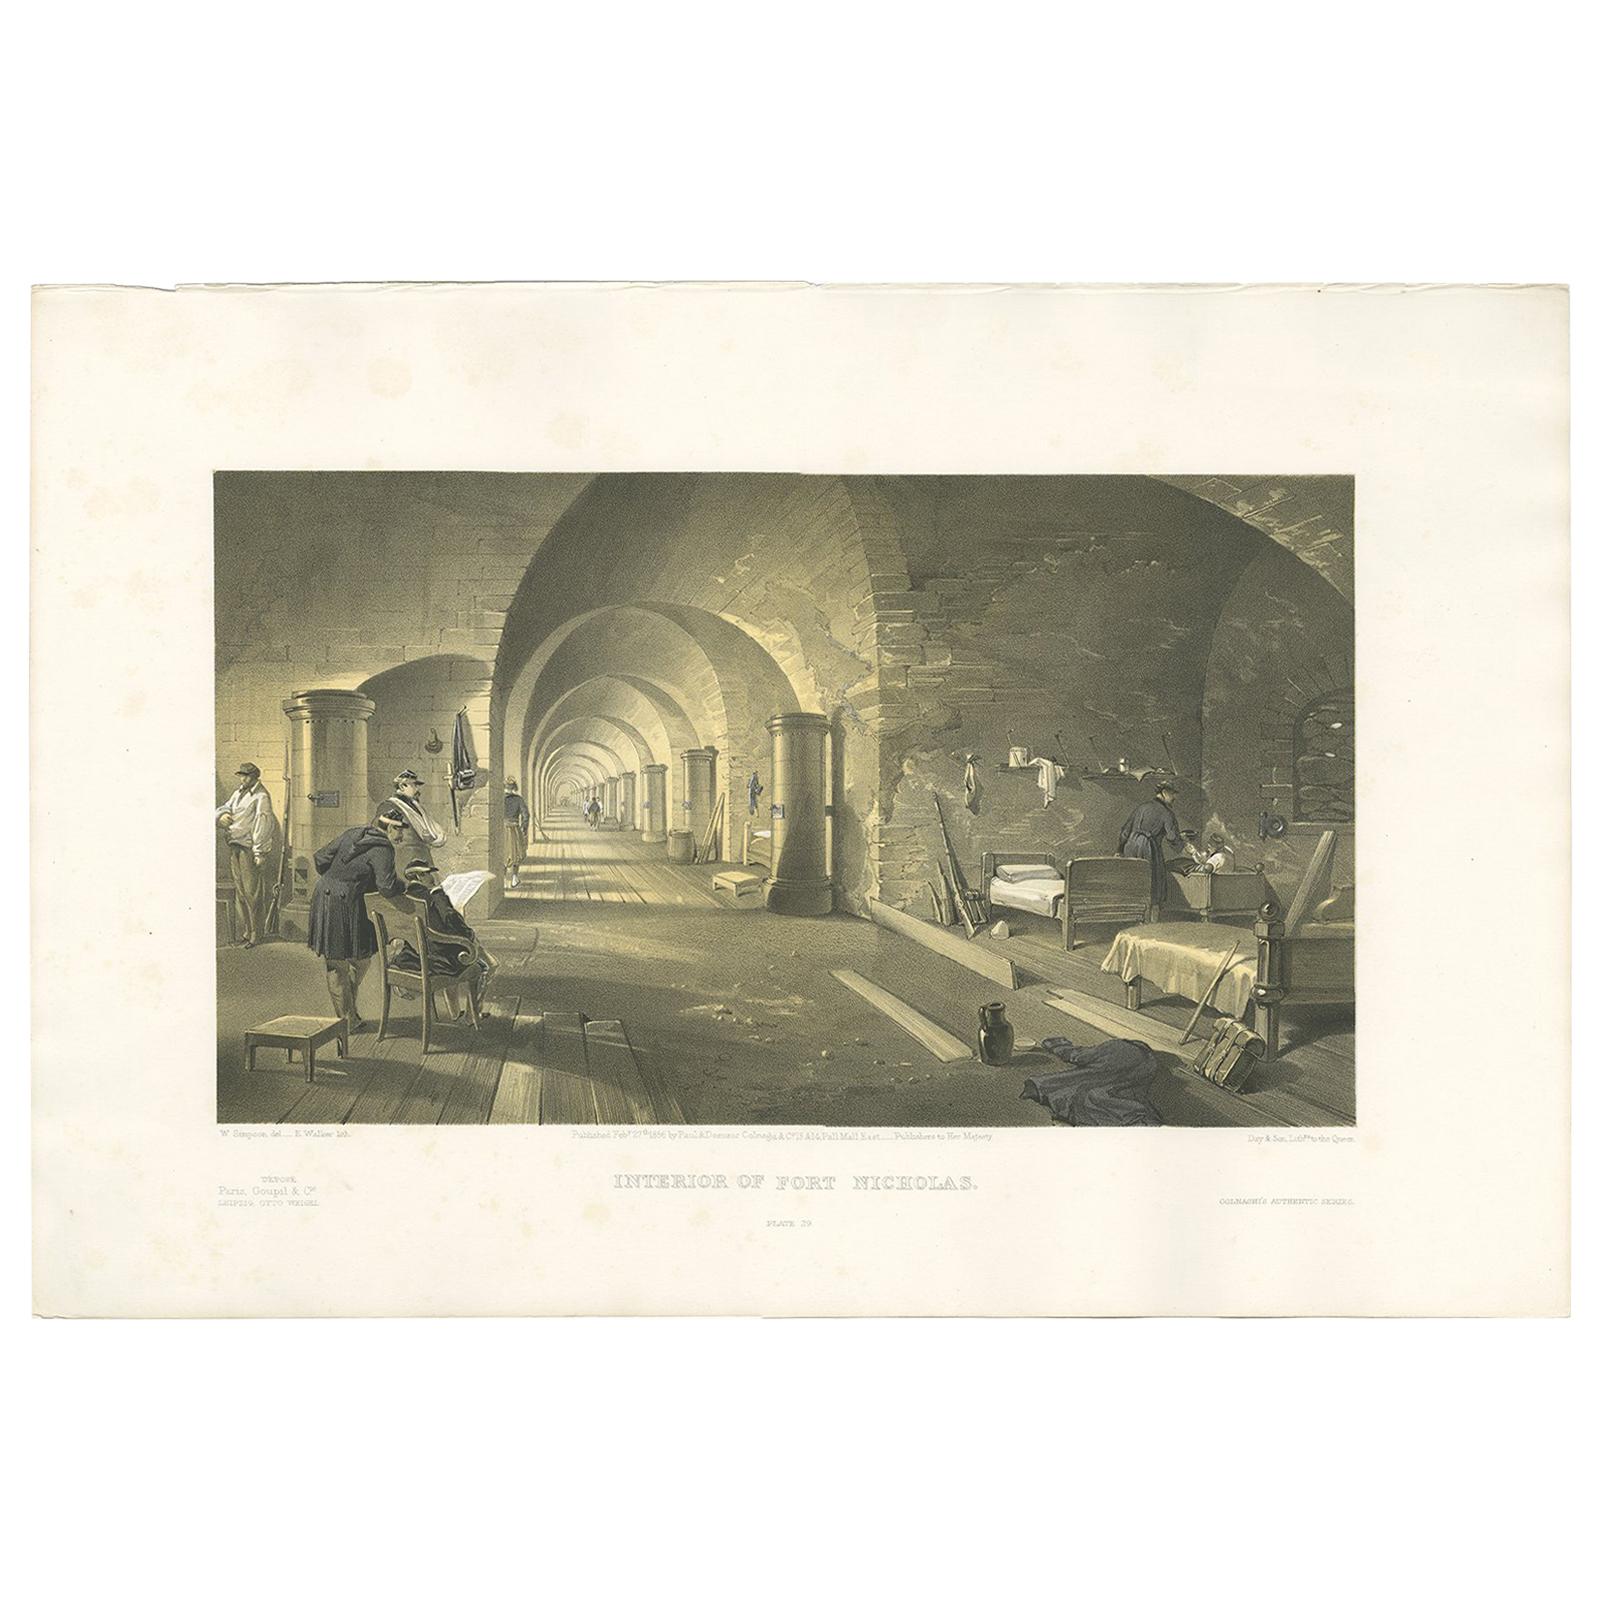 Impression ancienne de la guerre de Sécession de Fort Nicholas par W. Simpson, 1855